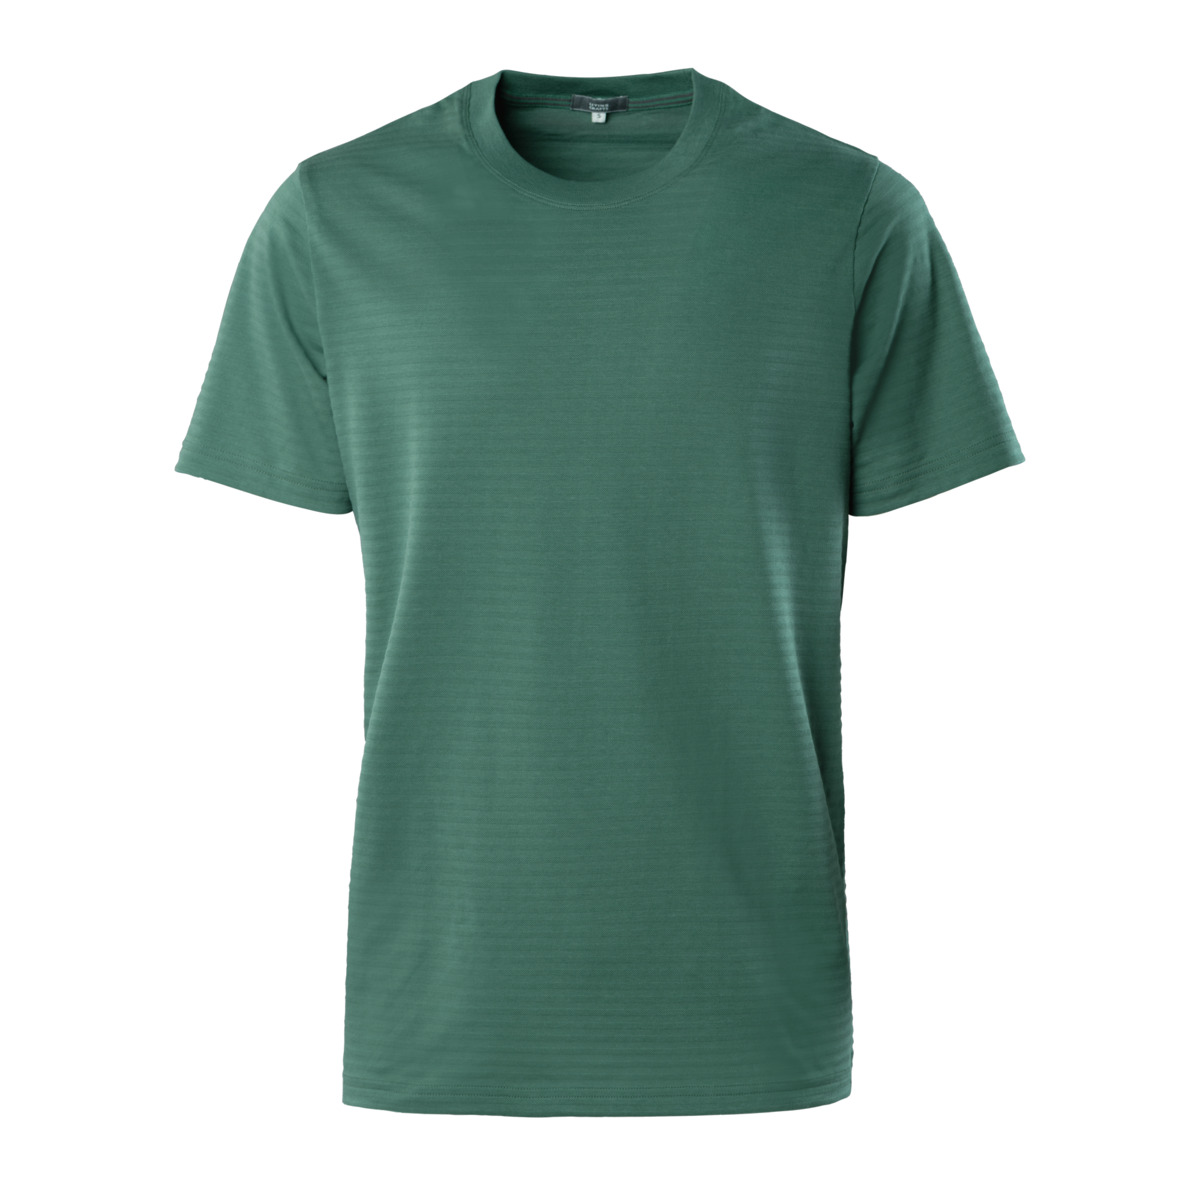 Grün T-Shirt, NICLAS